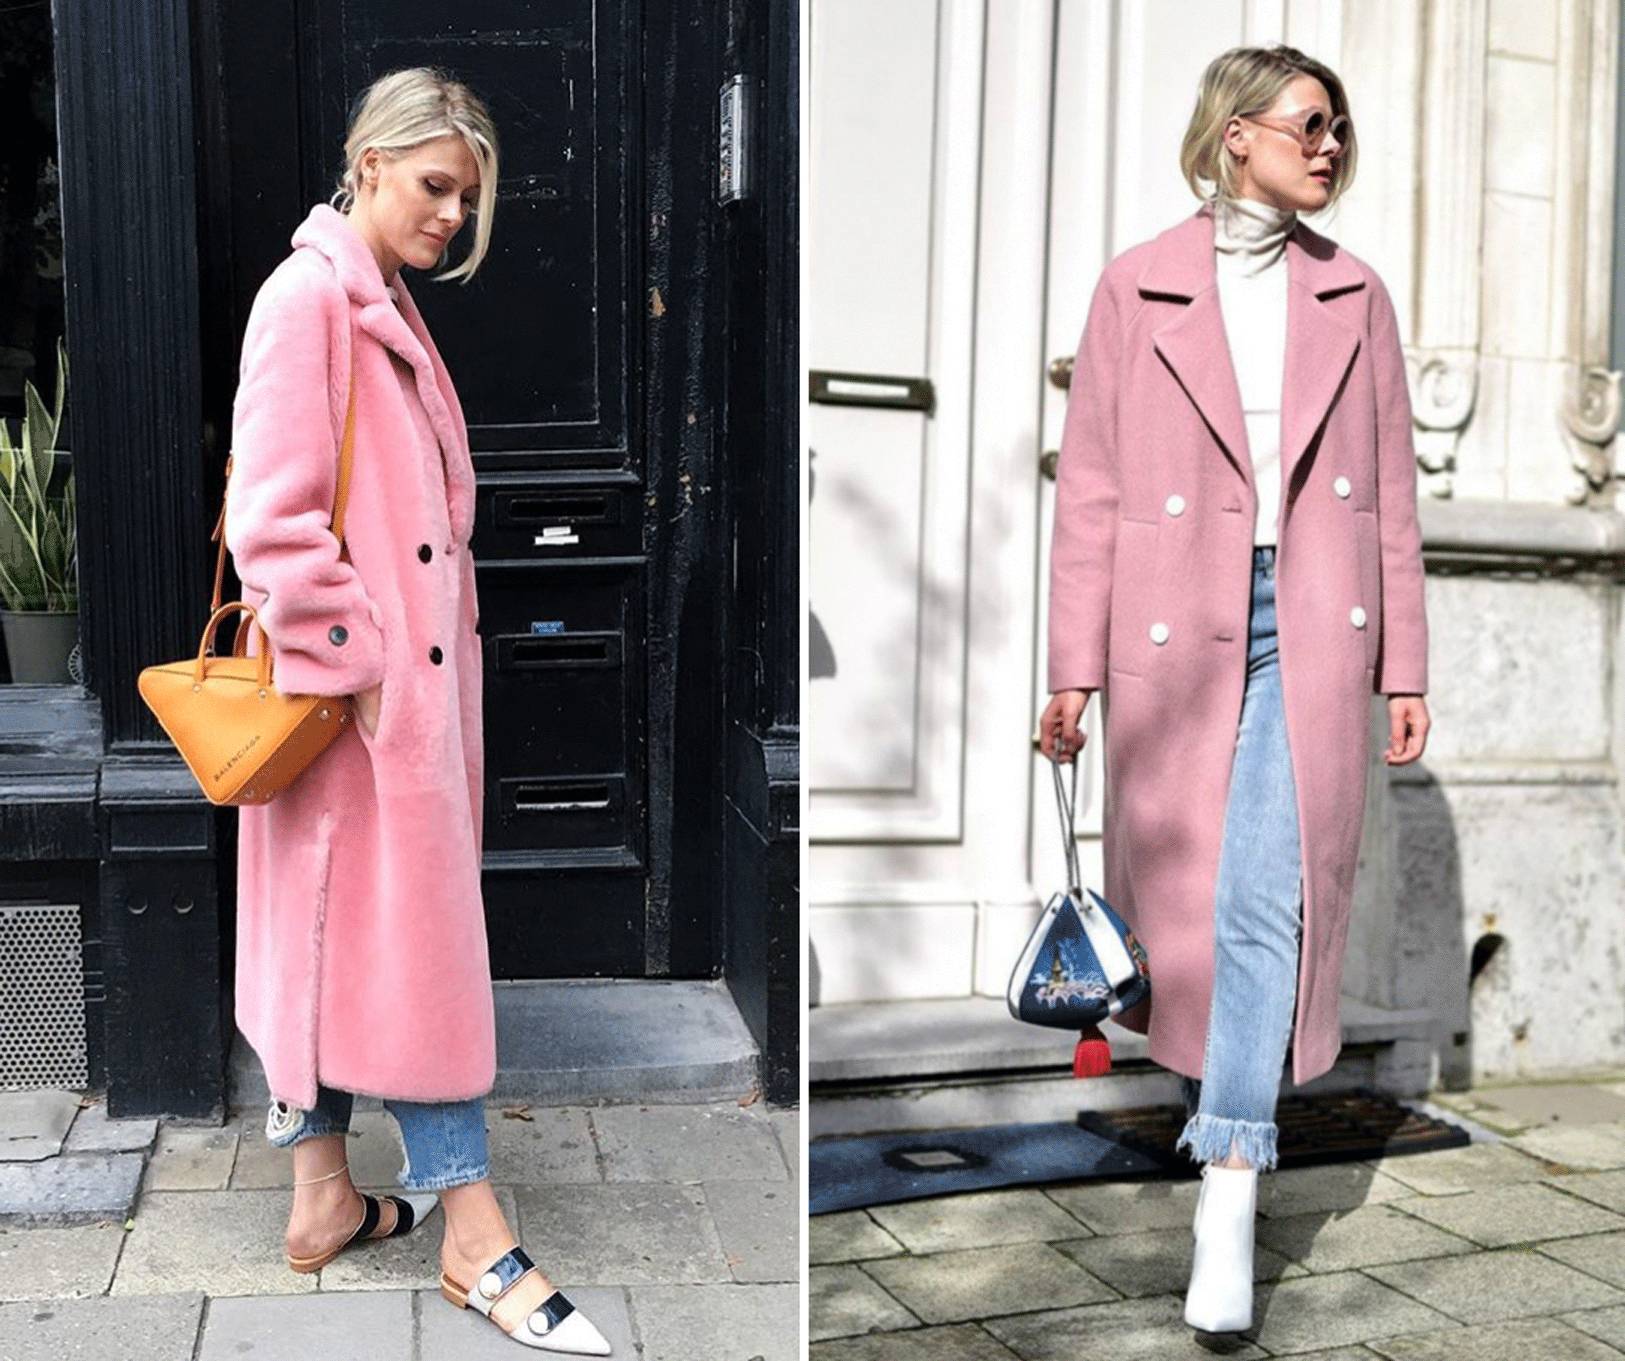 ▼好品味的 sofie valkiers 也很爱粉色大衣,用时髦的单品搭配出自己